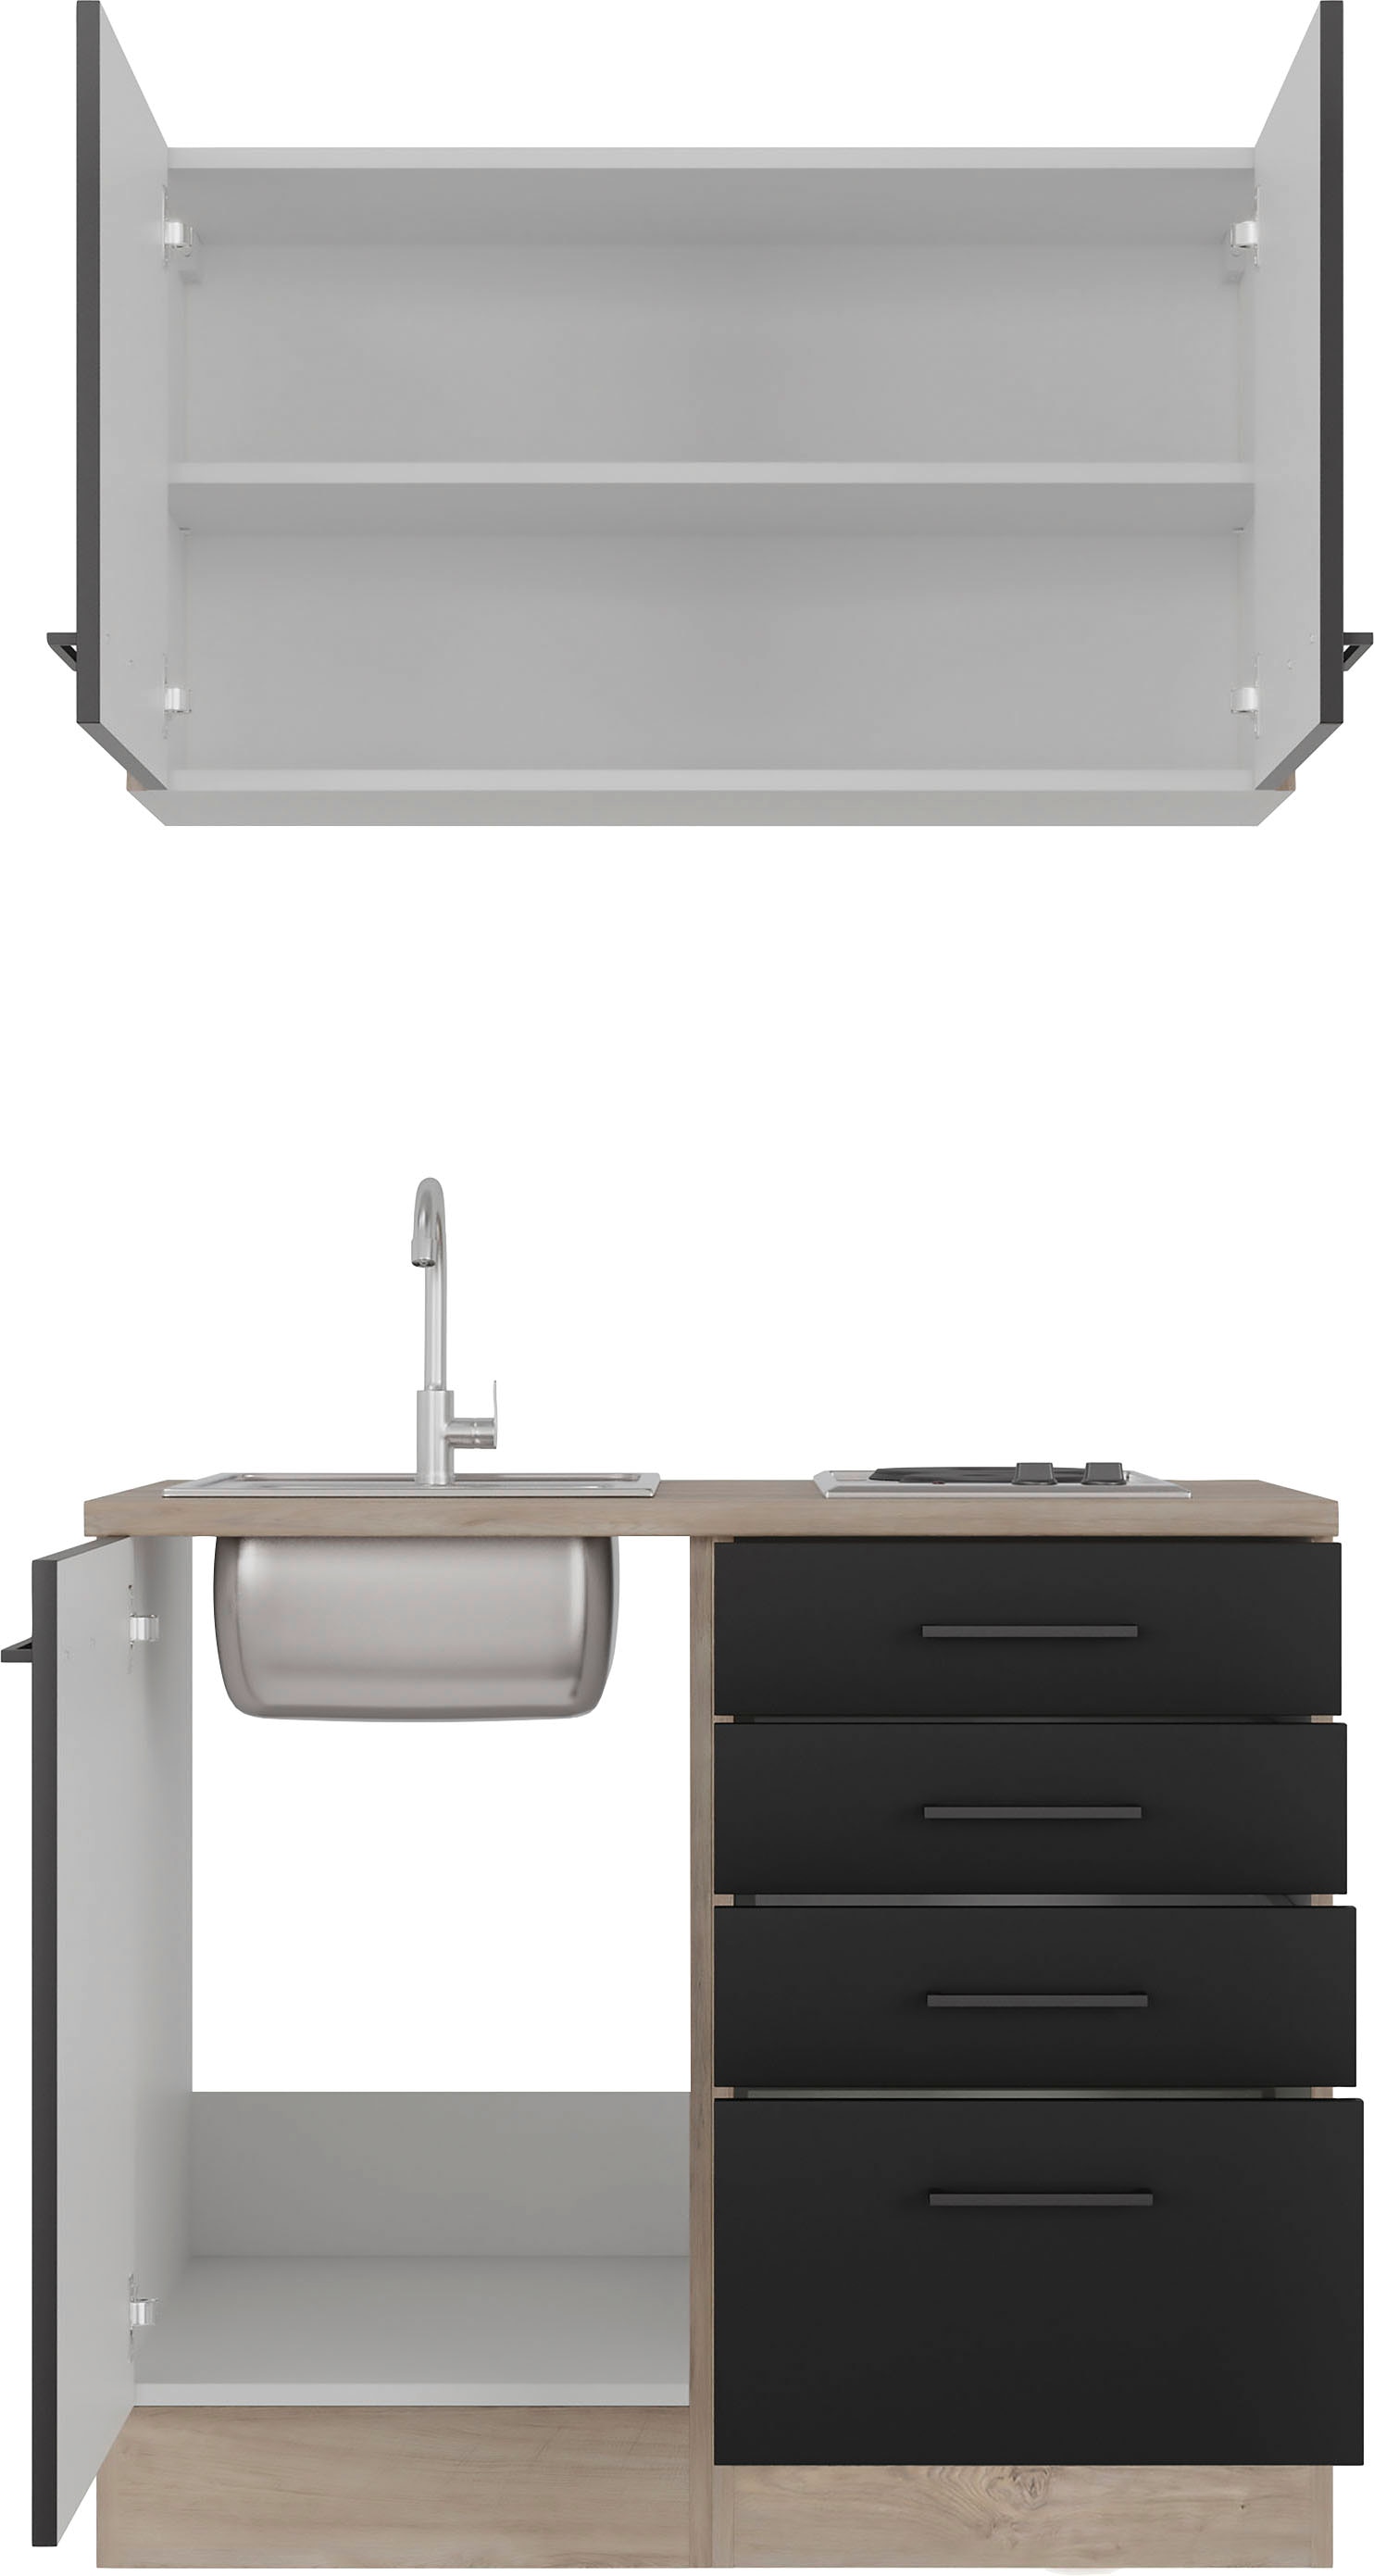 Flex-Well Küche »Capri«, mit E-Geräten, Gesamtbreite 100 cm, in weiten Farben erhältlich